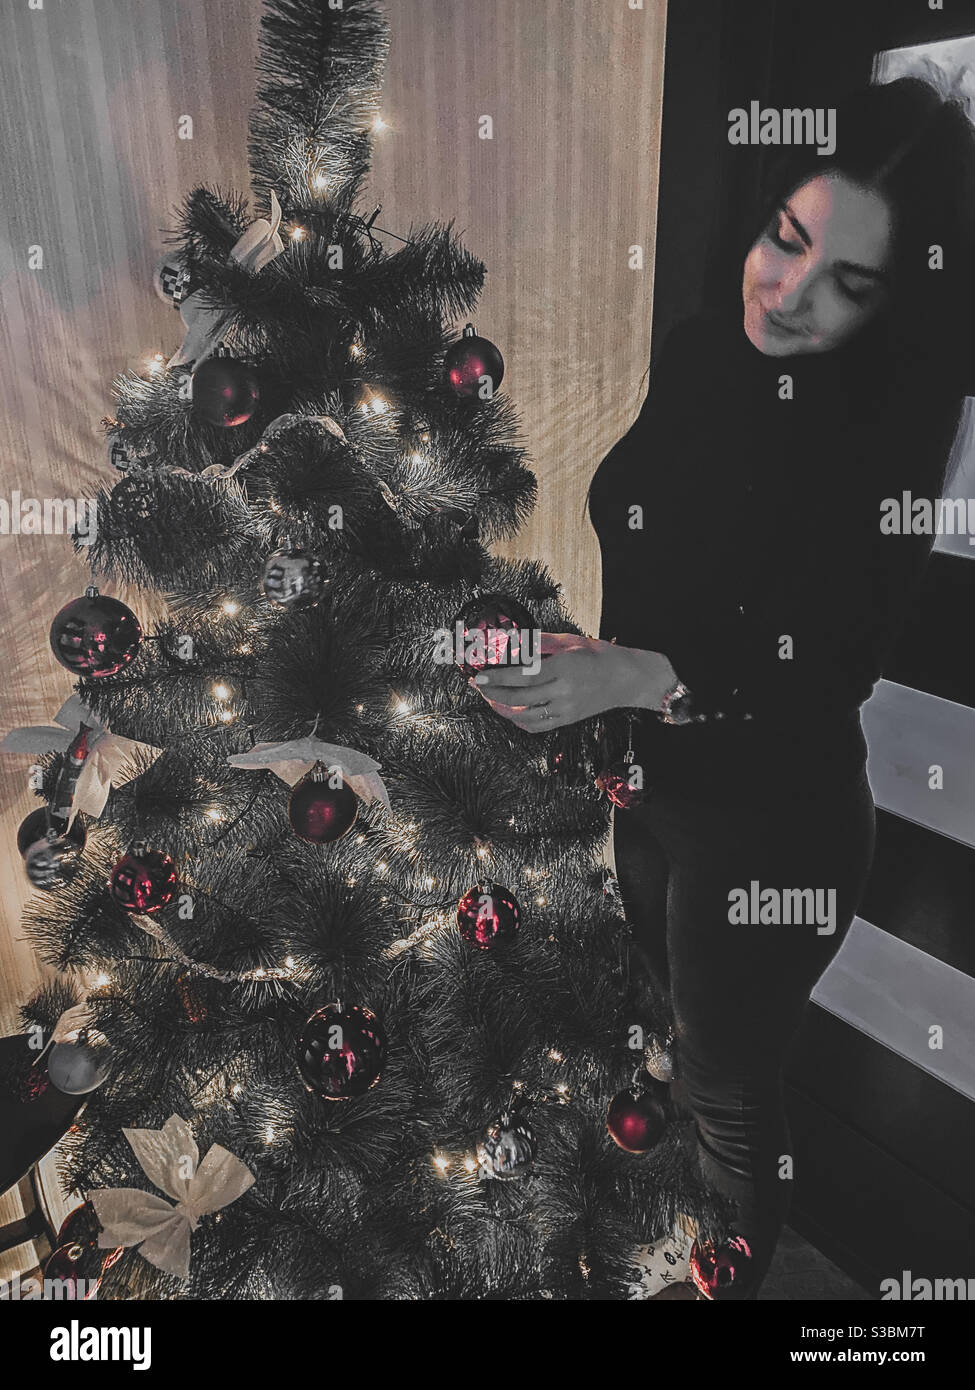 Eine junge Dame, die 2020 einen Weihnachtsbaum schmückt Stockfoto